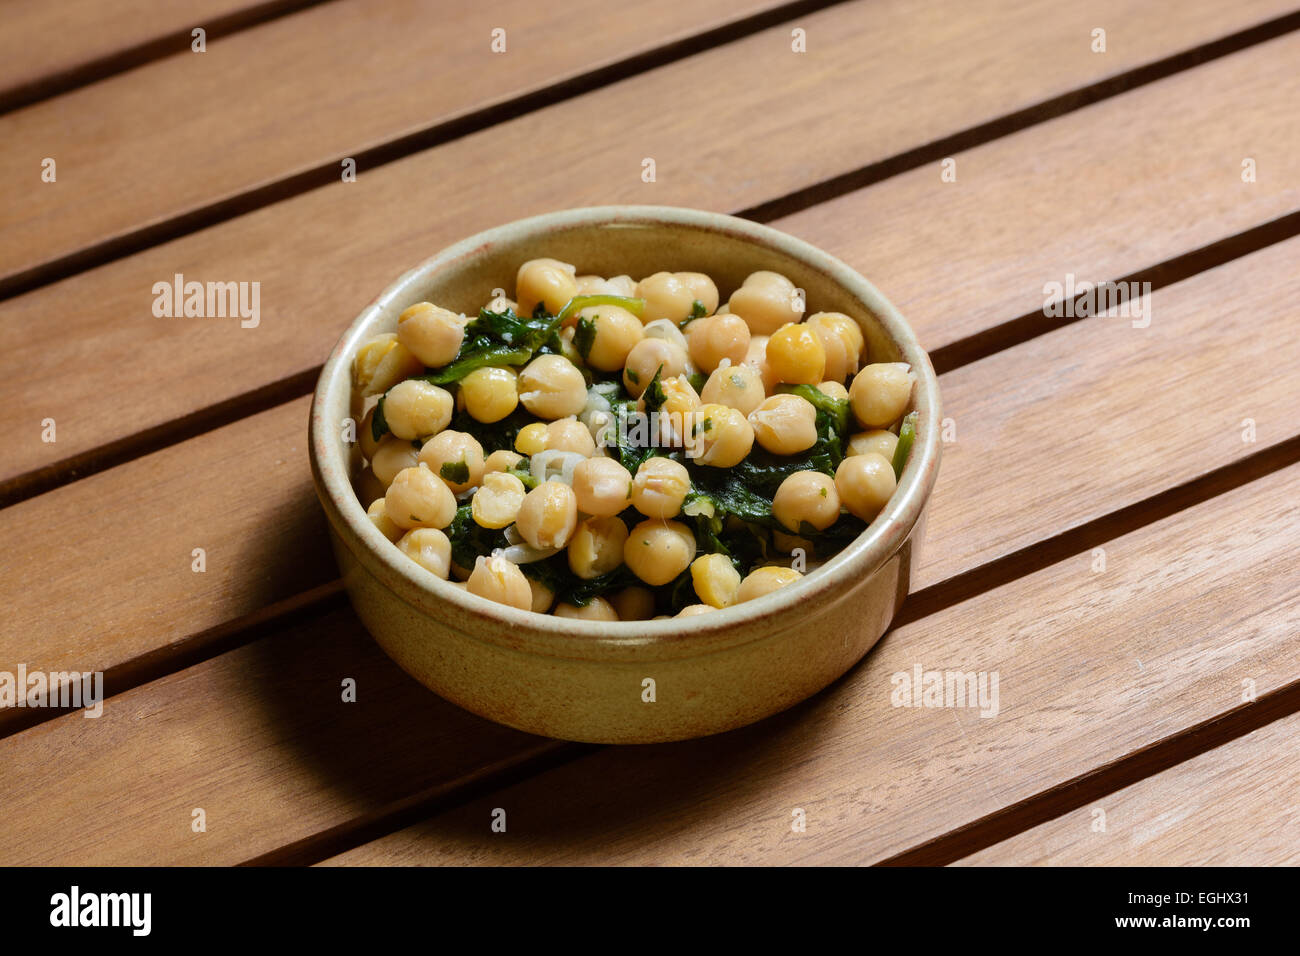 Des tapas. Les épinards et pois chiches cuits dans une sauce épicée, servi dans un bol en céramique marron sur une table en bois Banque D'Images